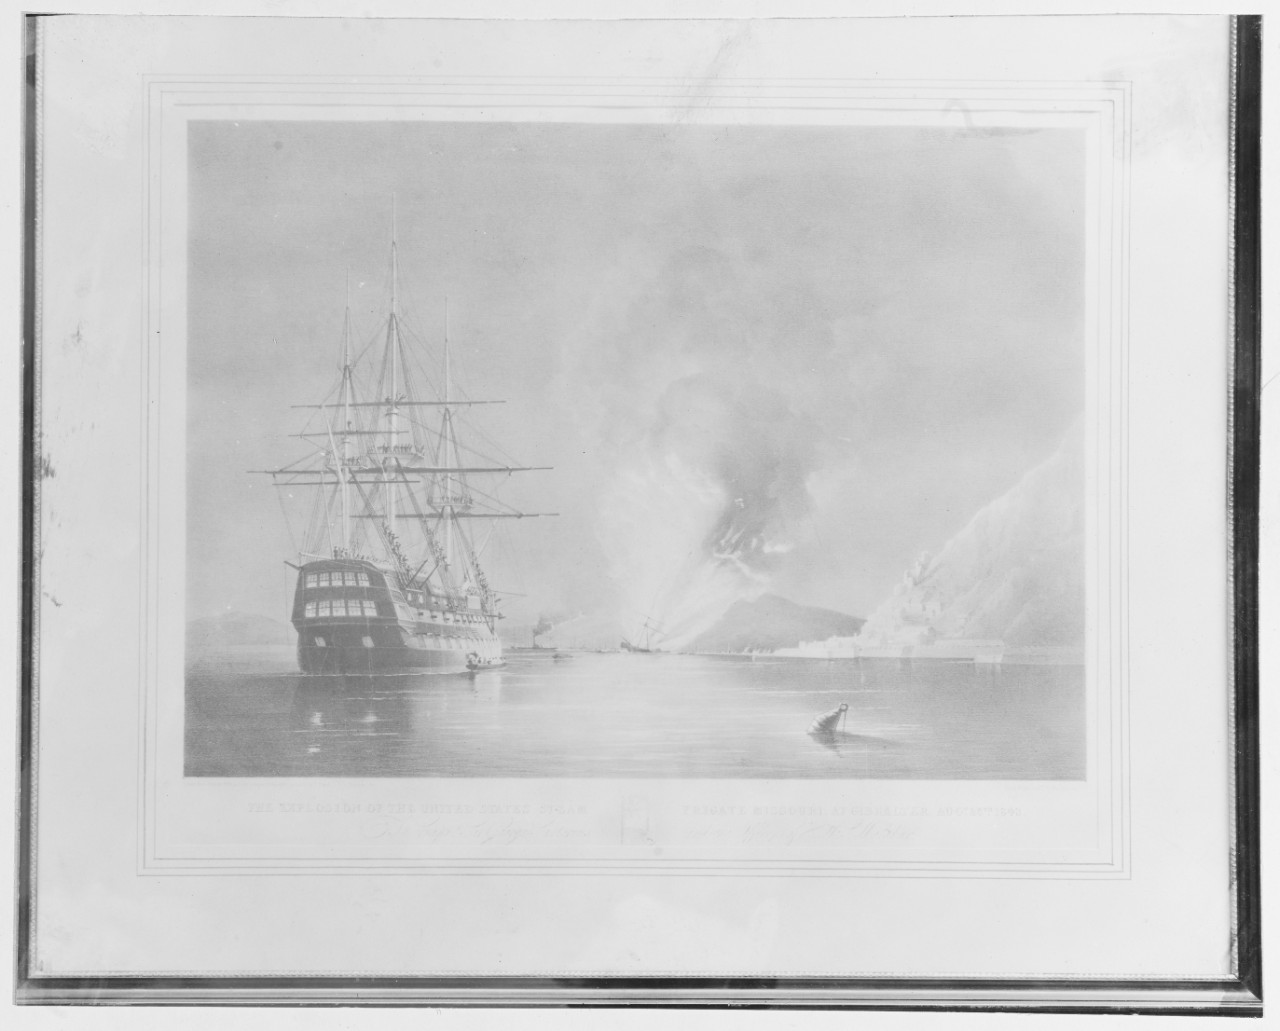 U.S. steam frigate MISSOURI (1841-1843)